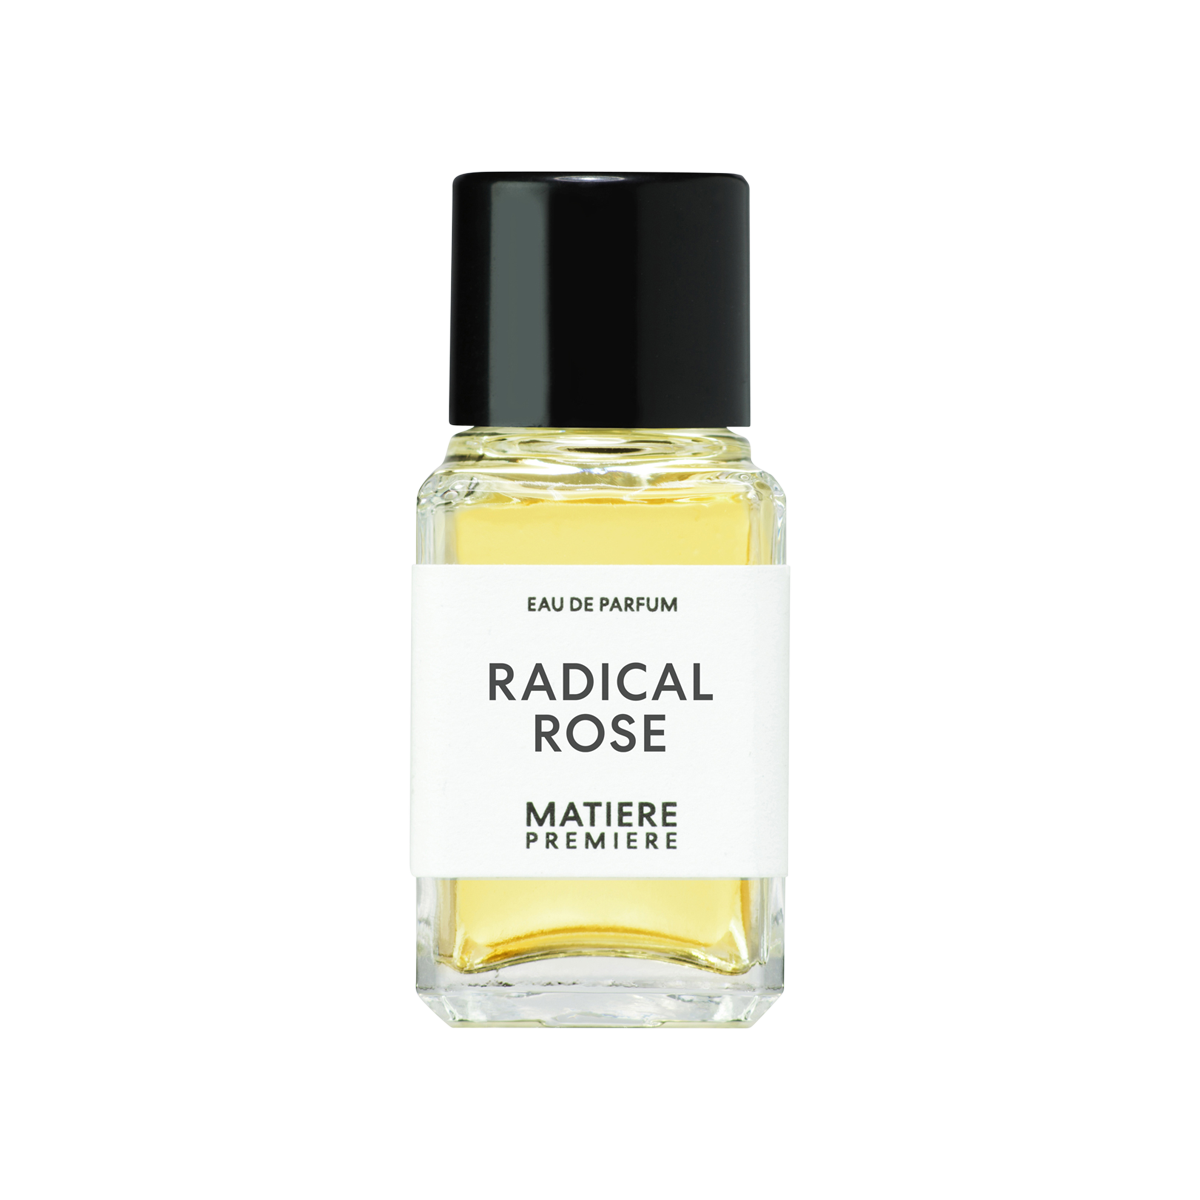 Matiere Premiere - Radical Rose Eau de Parfum